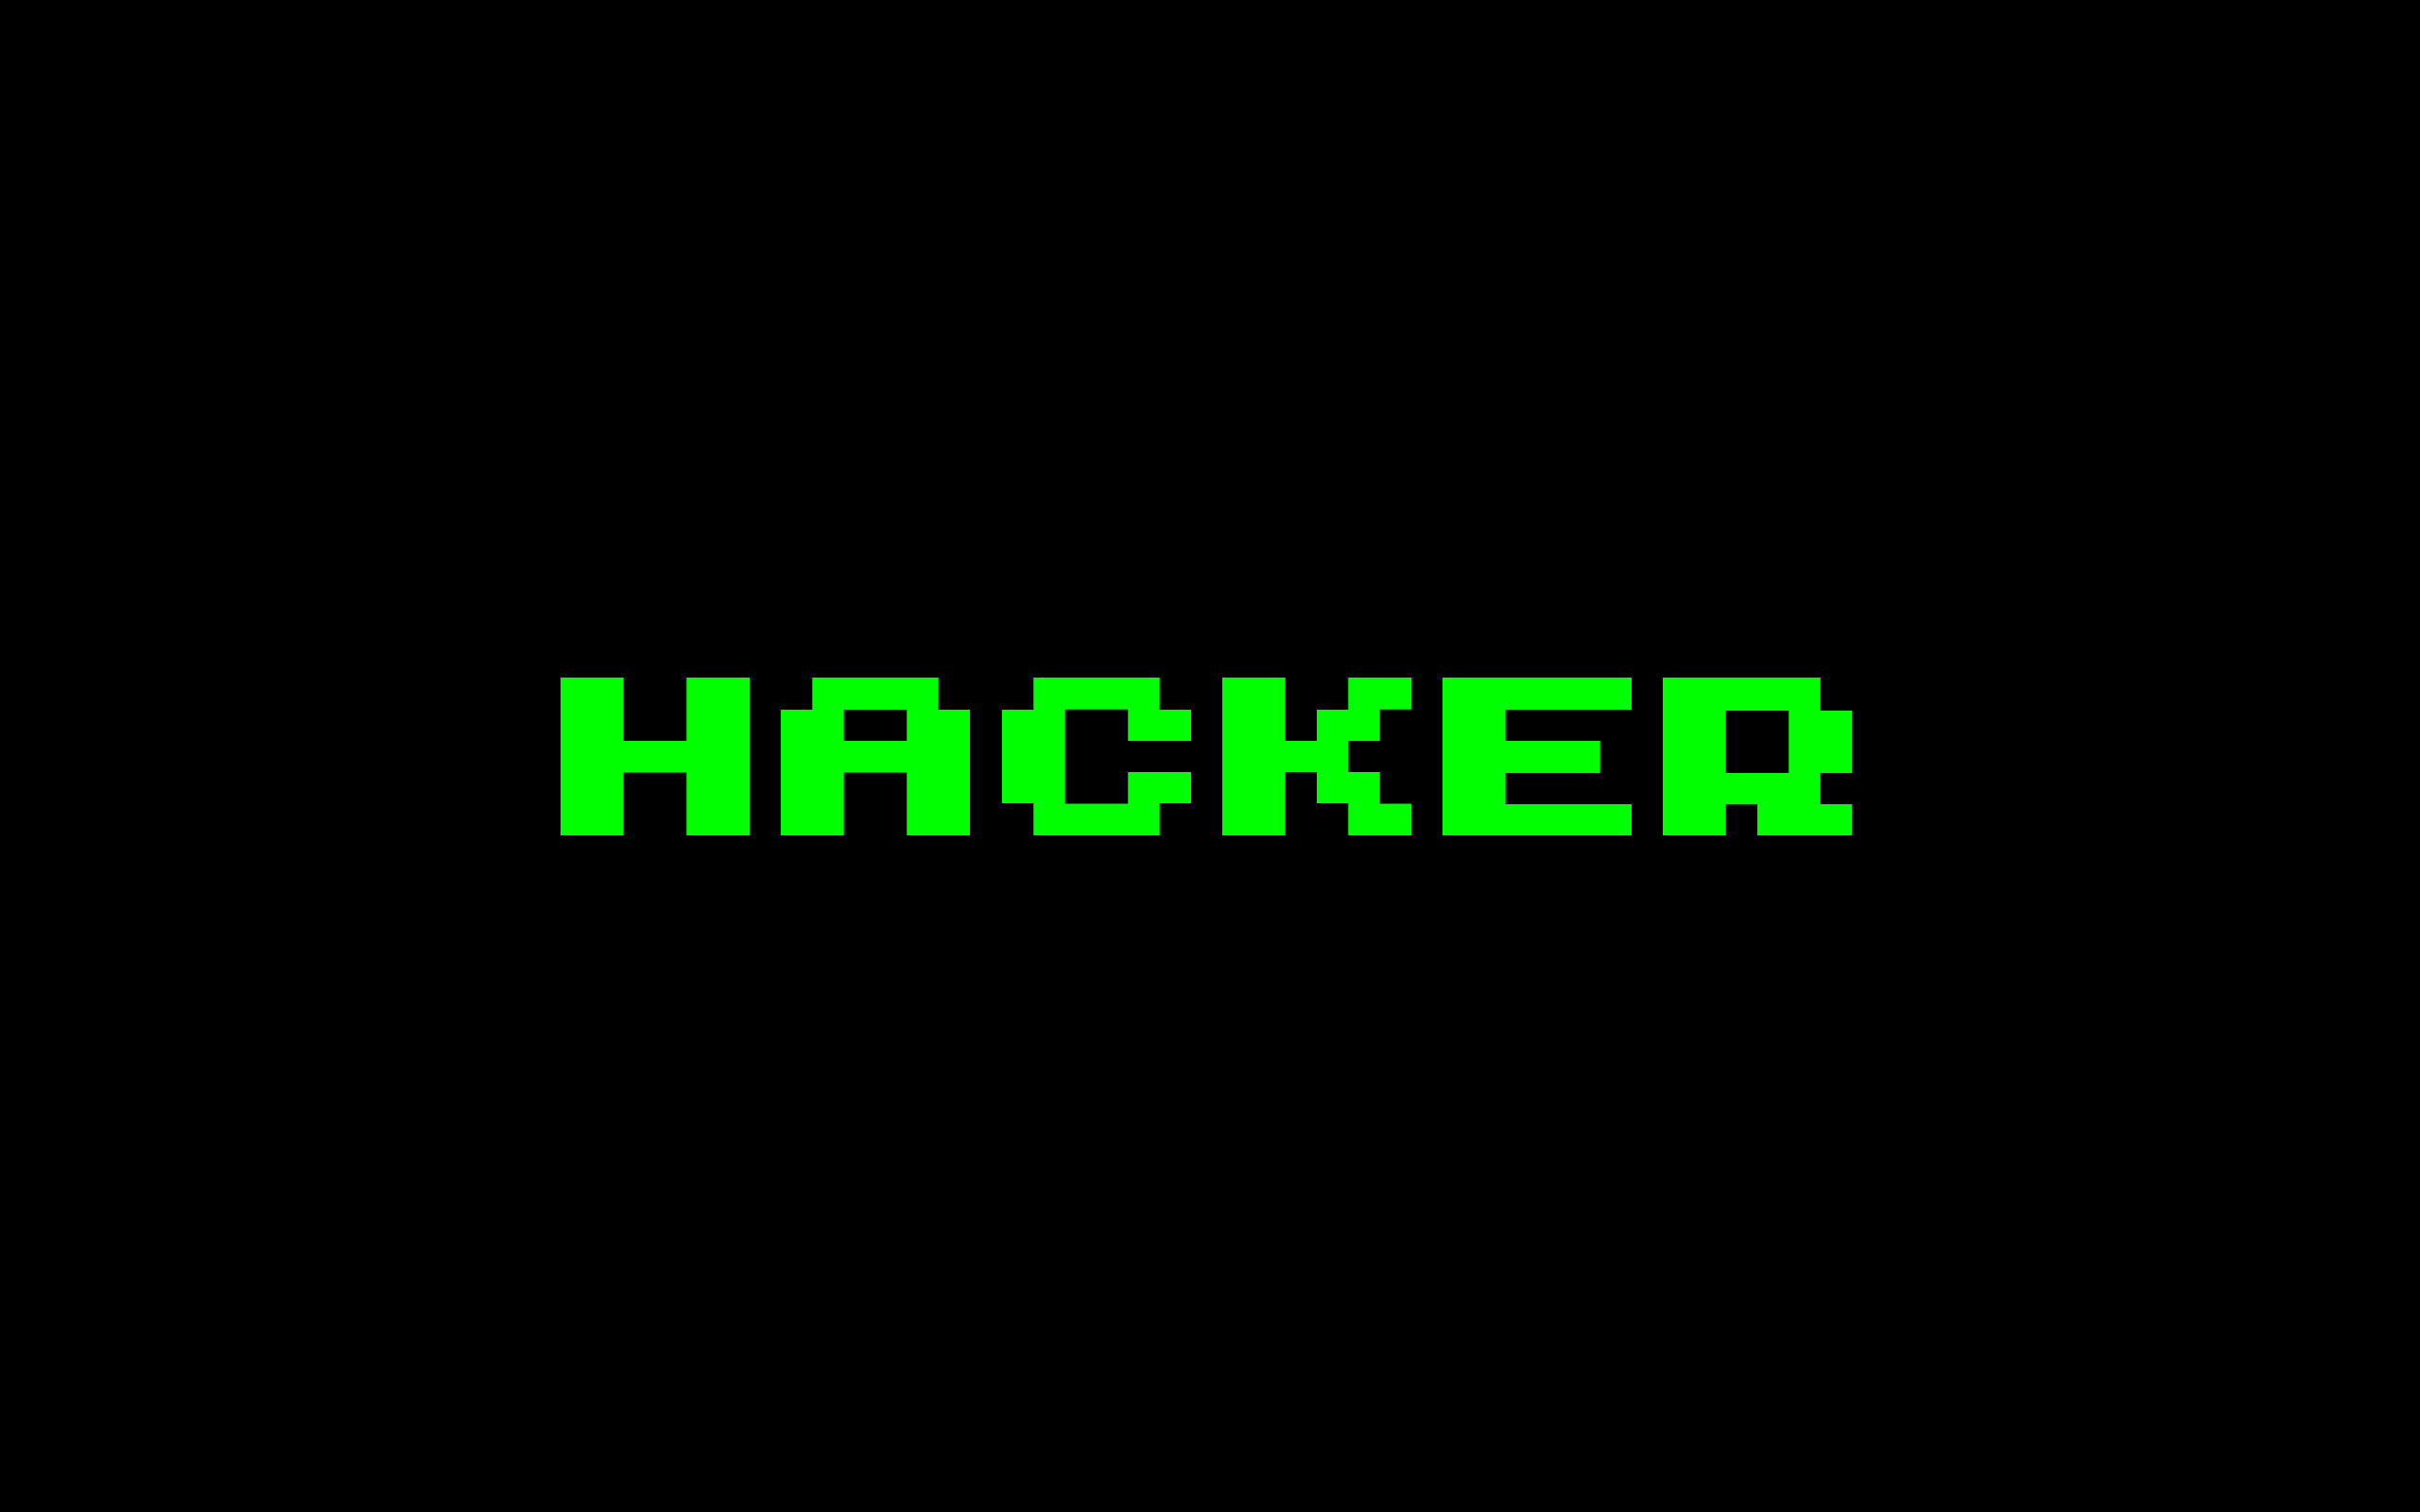 Hacker Wallpaper By Brianlechthaler